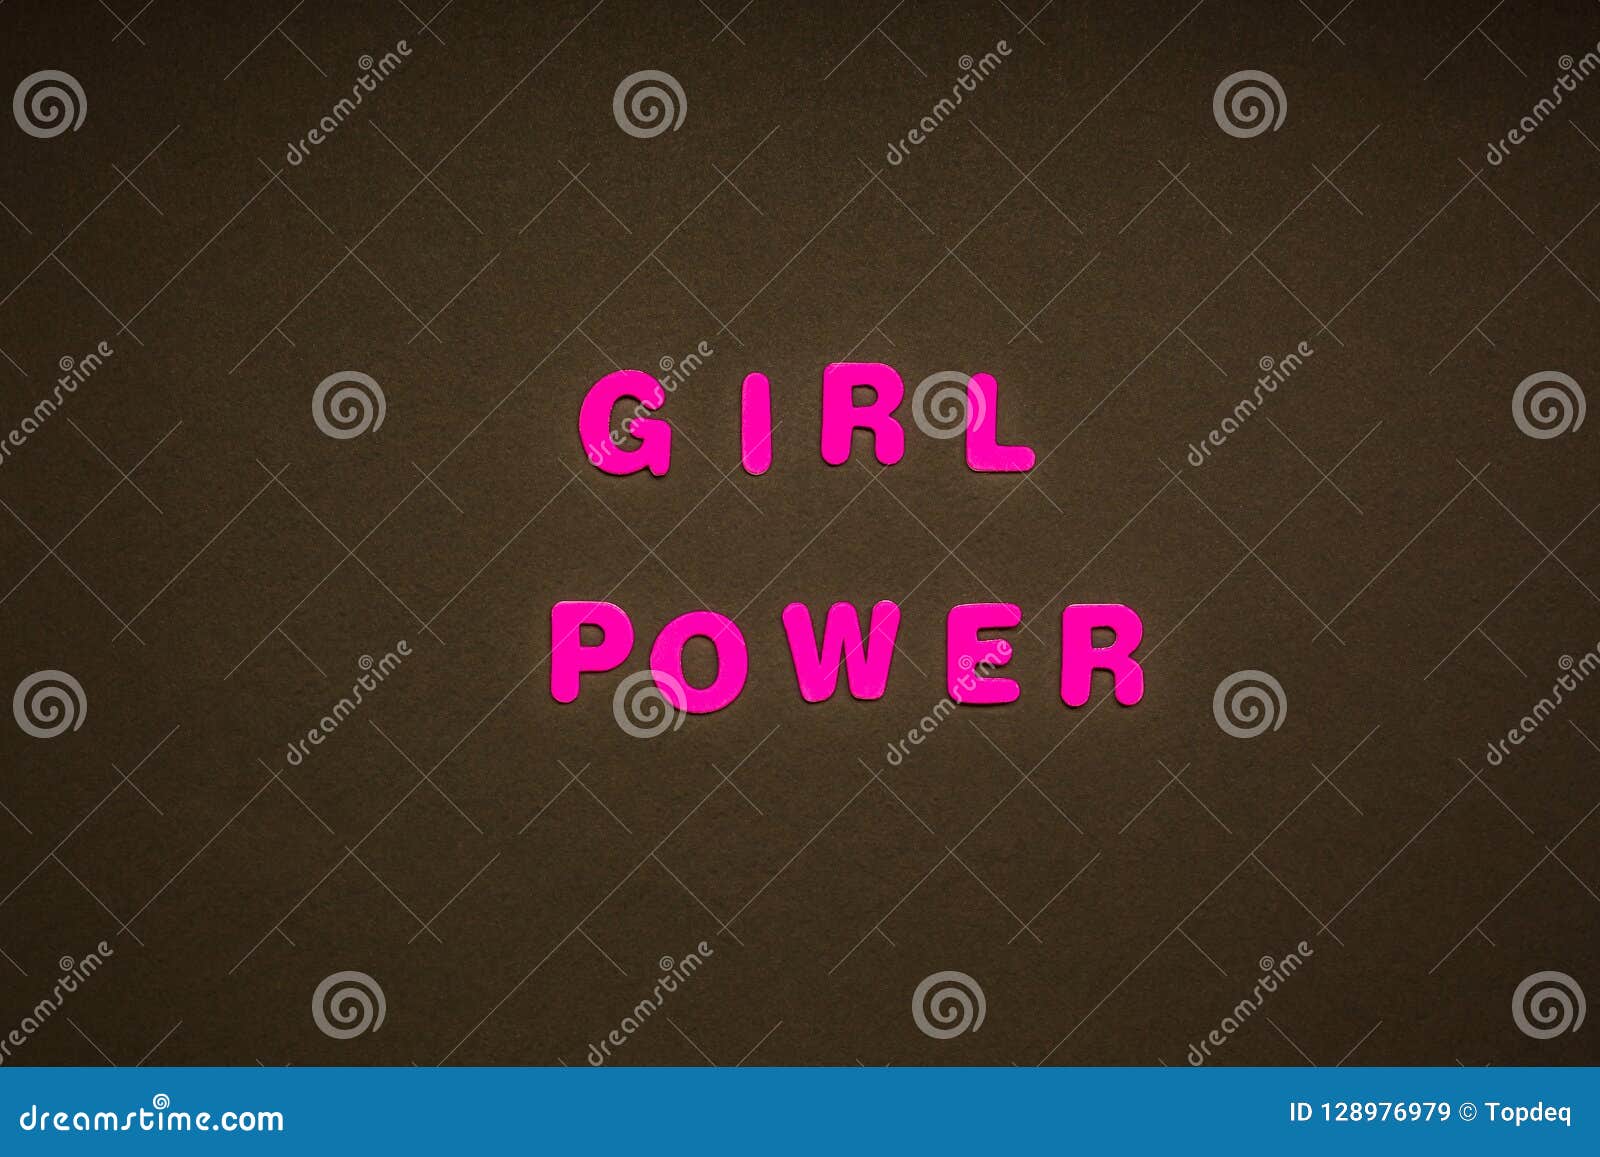 Girl power essay